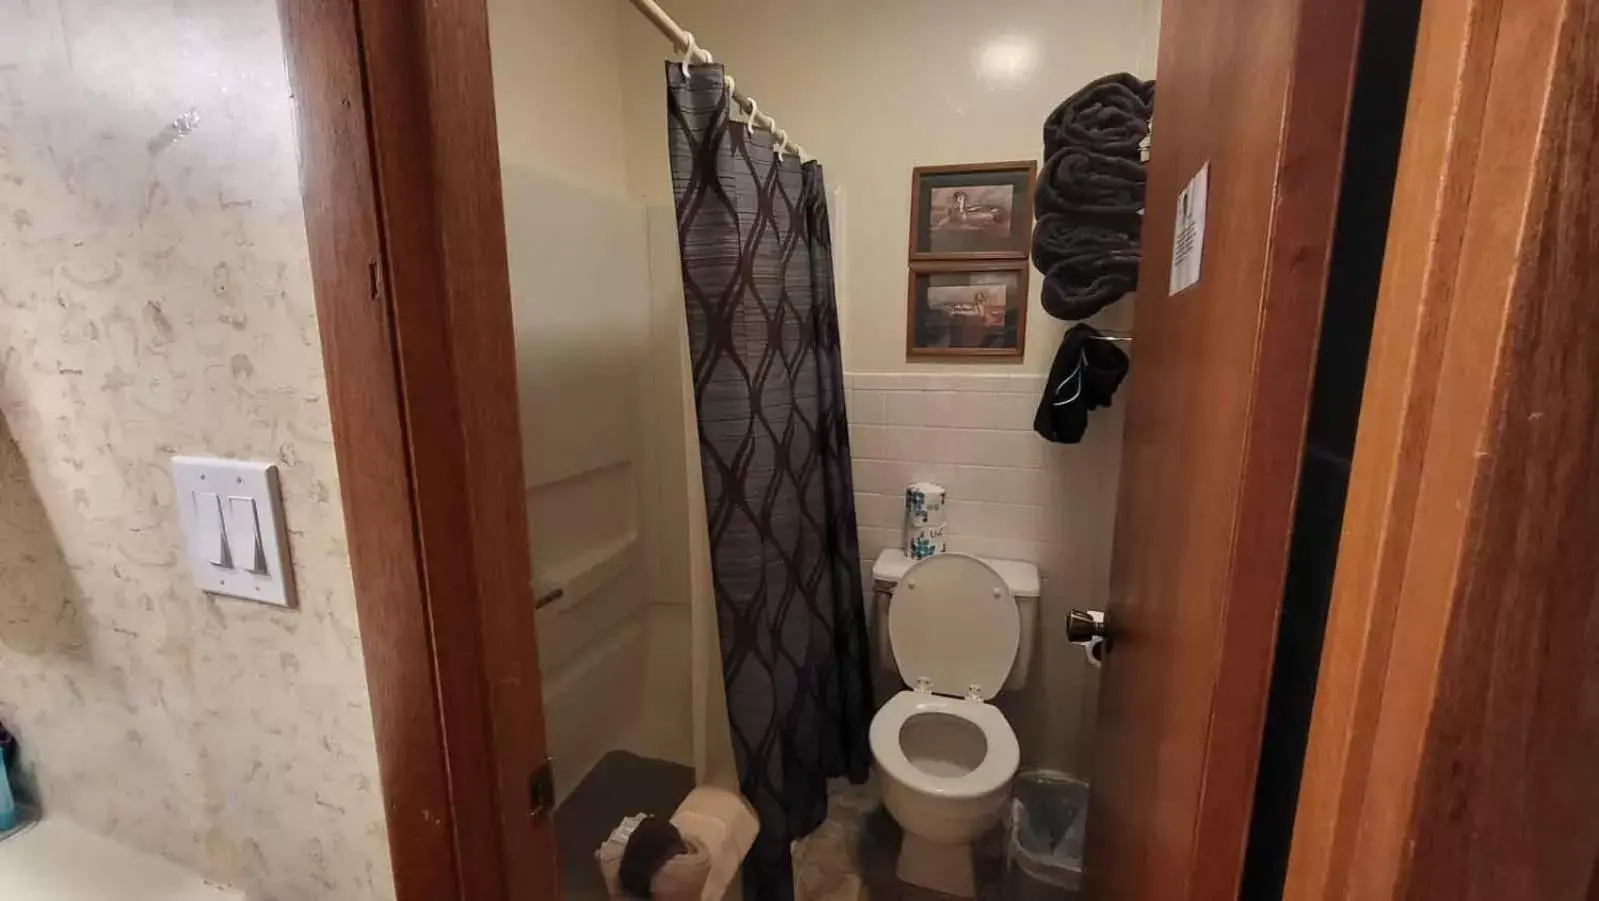 Bathroom in Hunter's Friend Resort Near Table Rock Lake